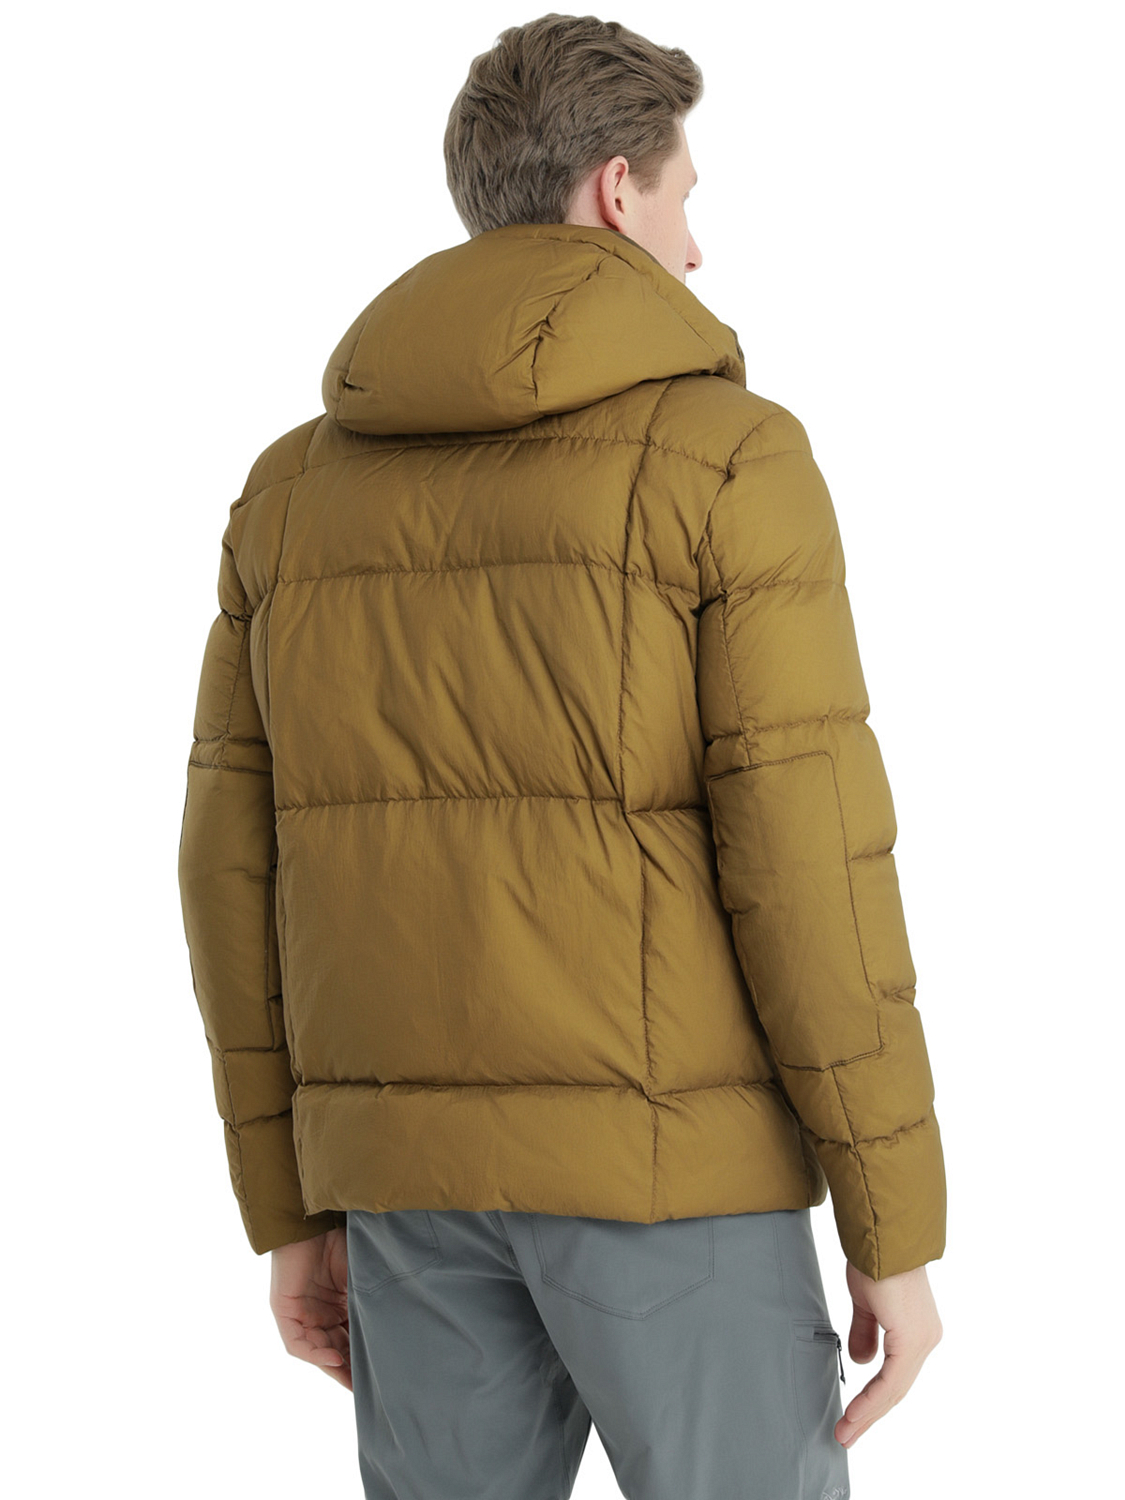 Куртка Dolomite Jacket M's 76 Fitzroy Earth Brown/Burnt Orange